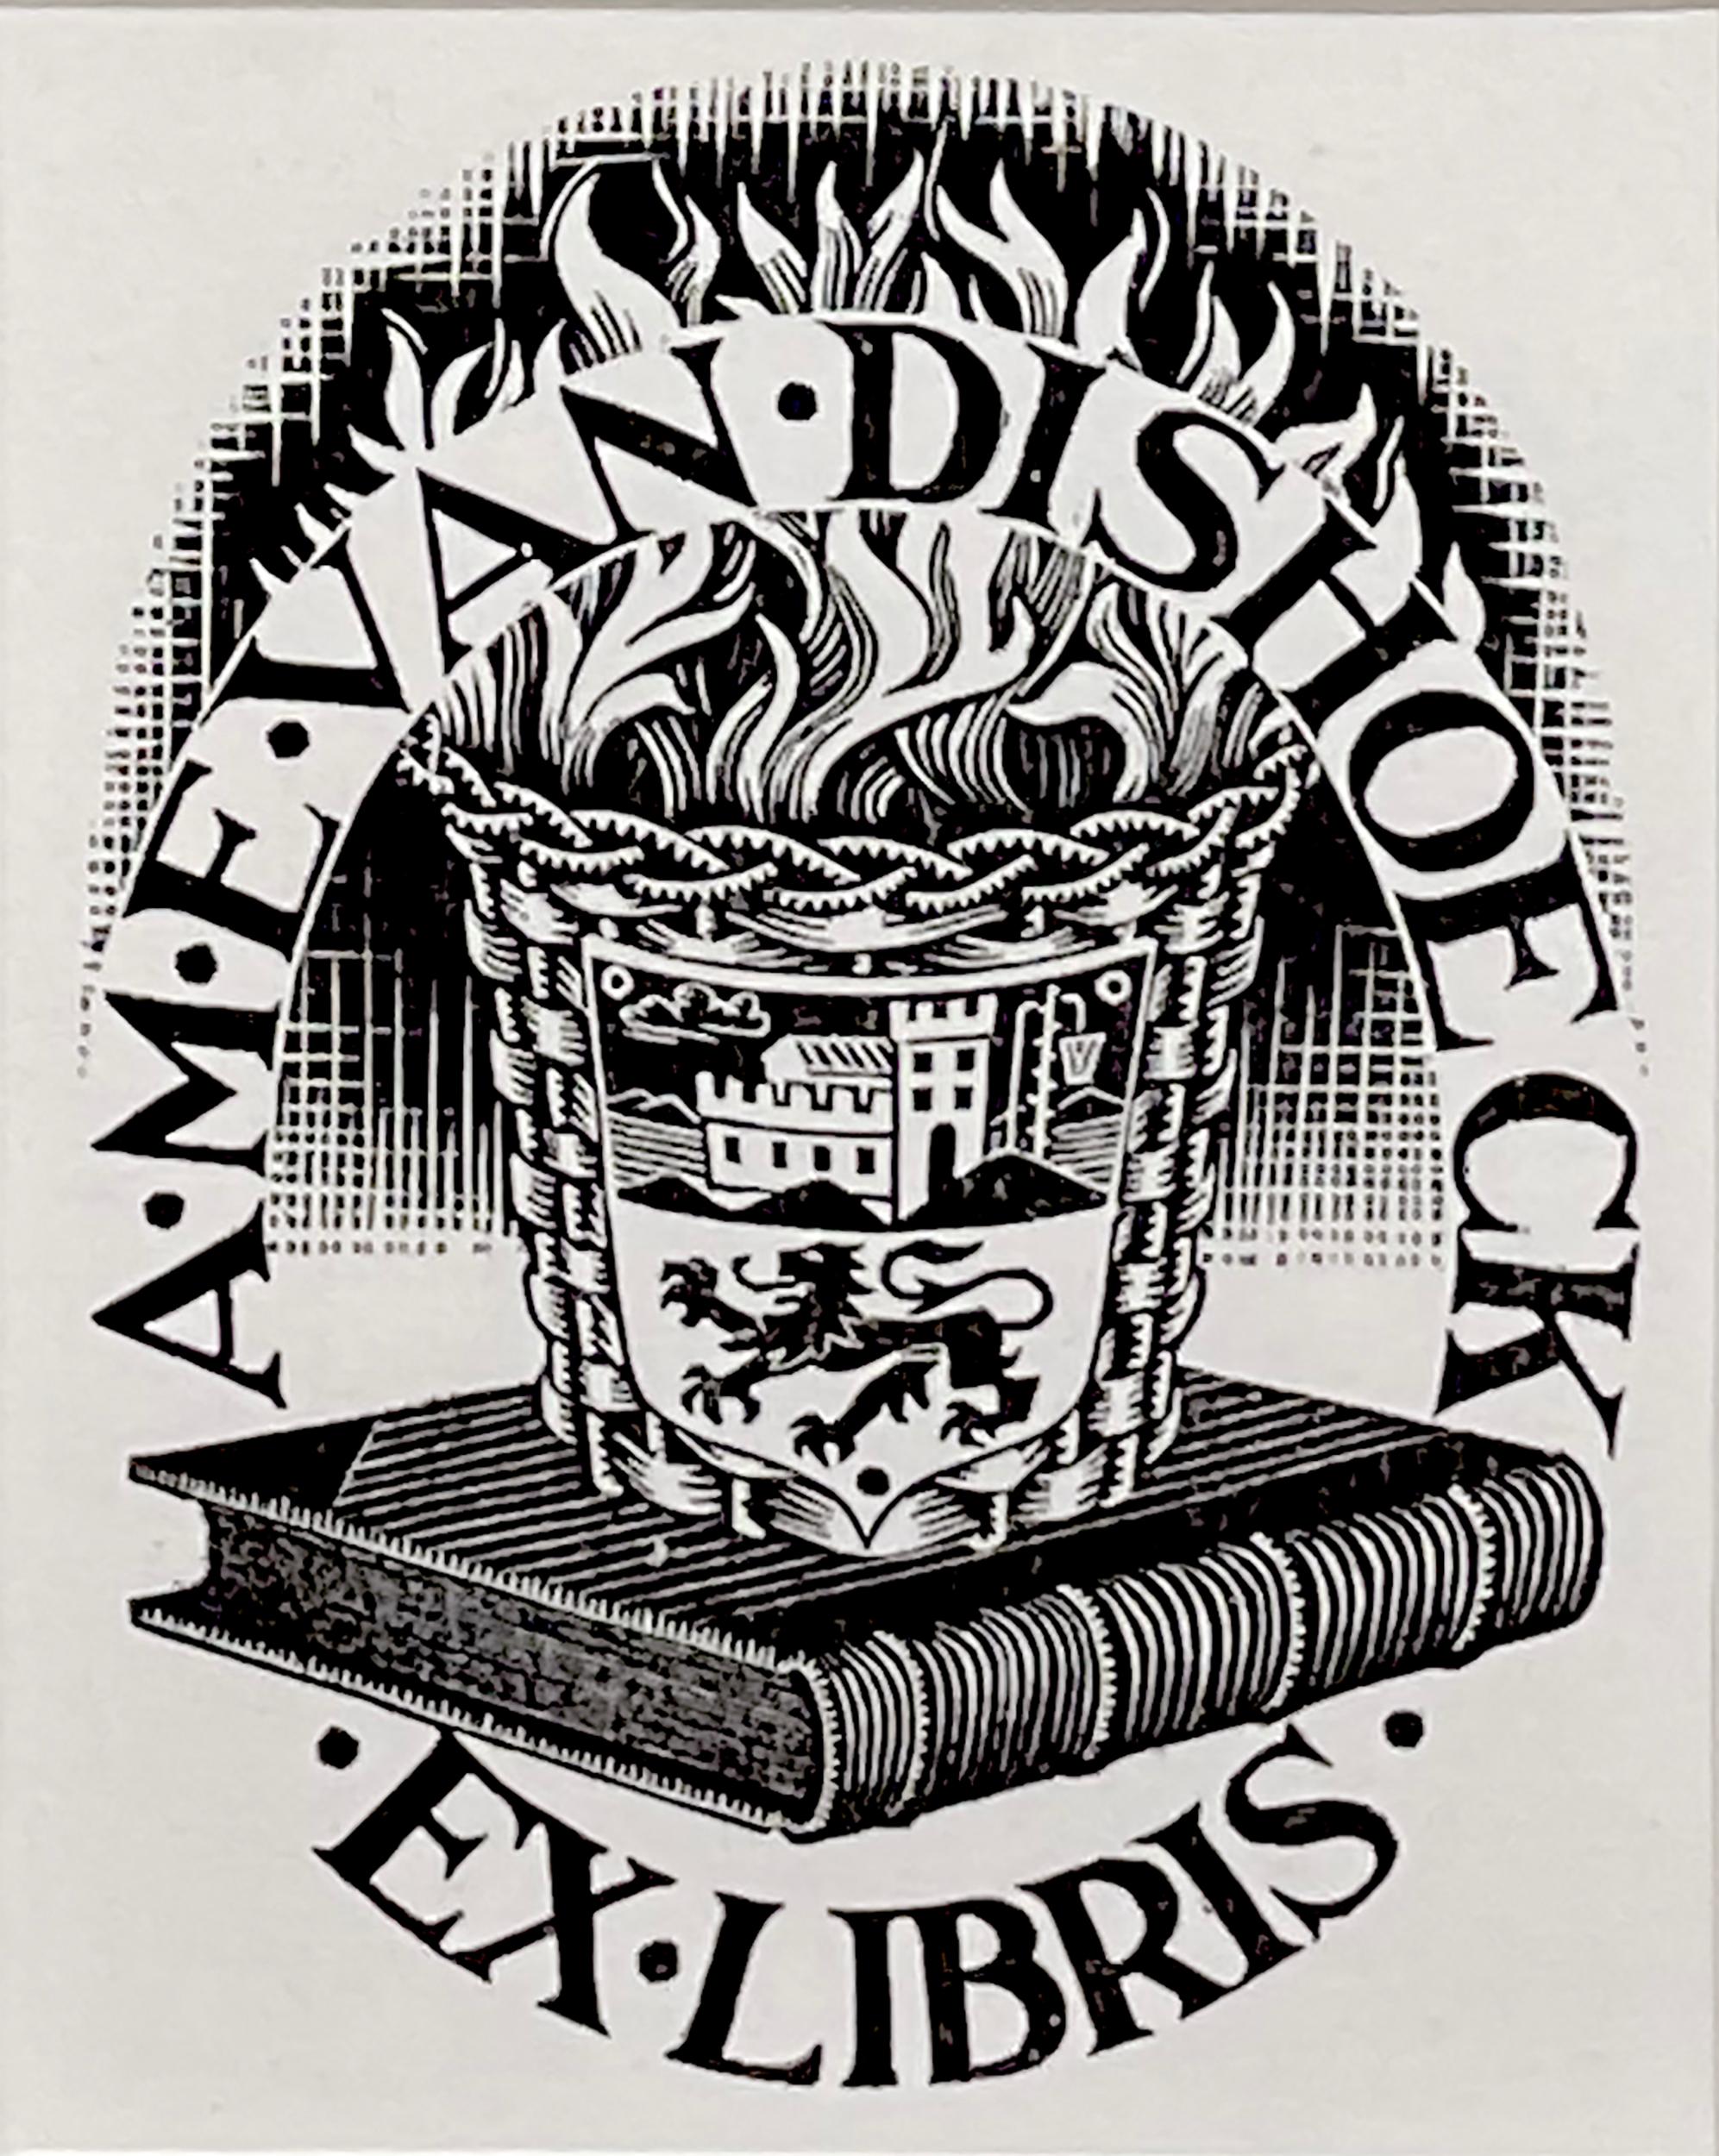 Ex Libris van Dishoeck - Print by M.C. Escher